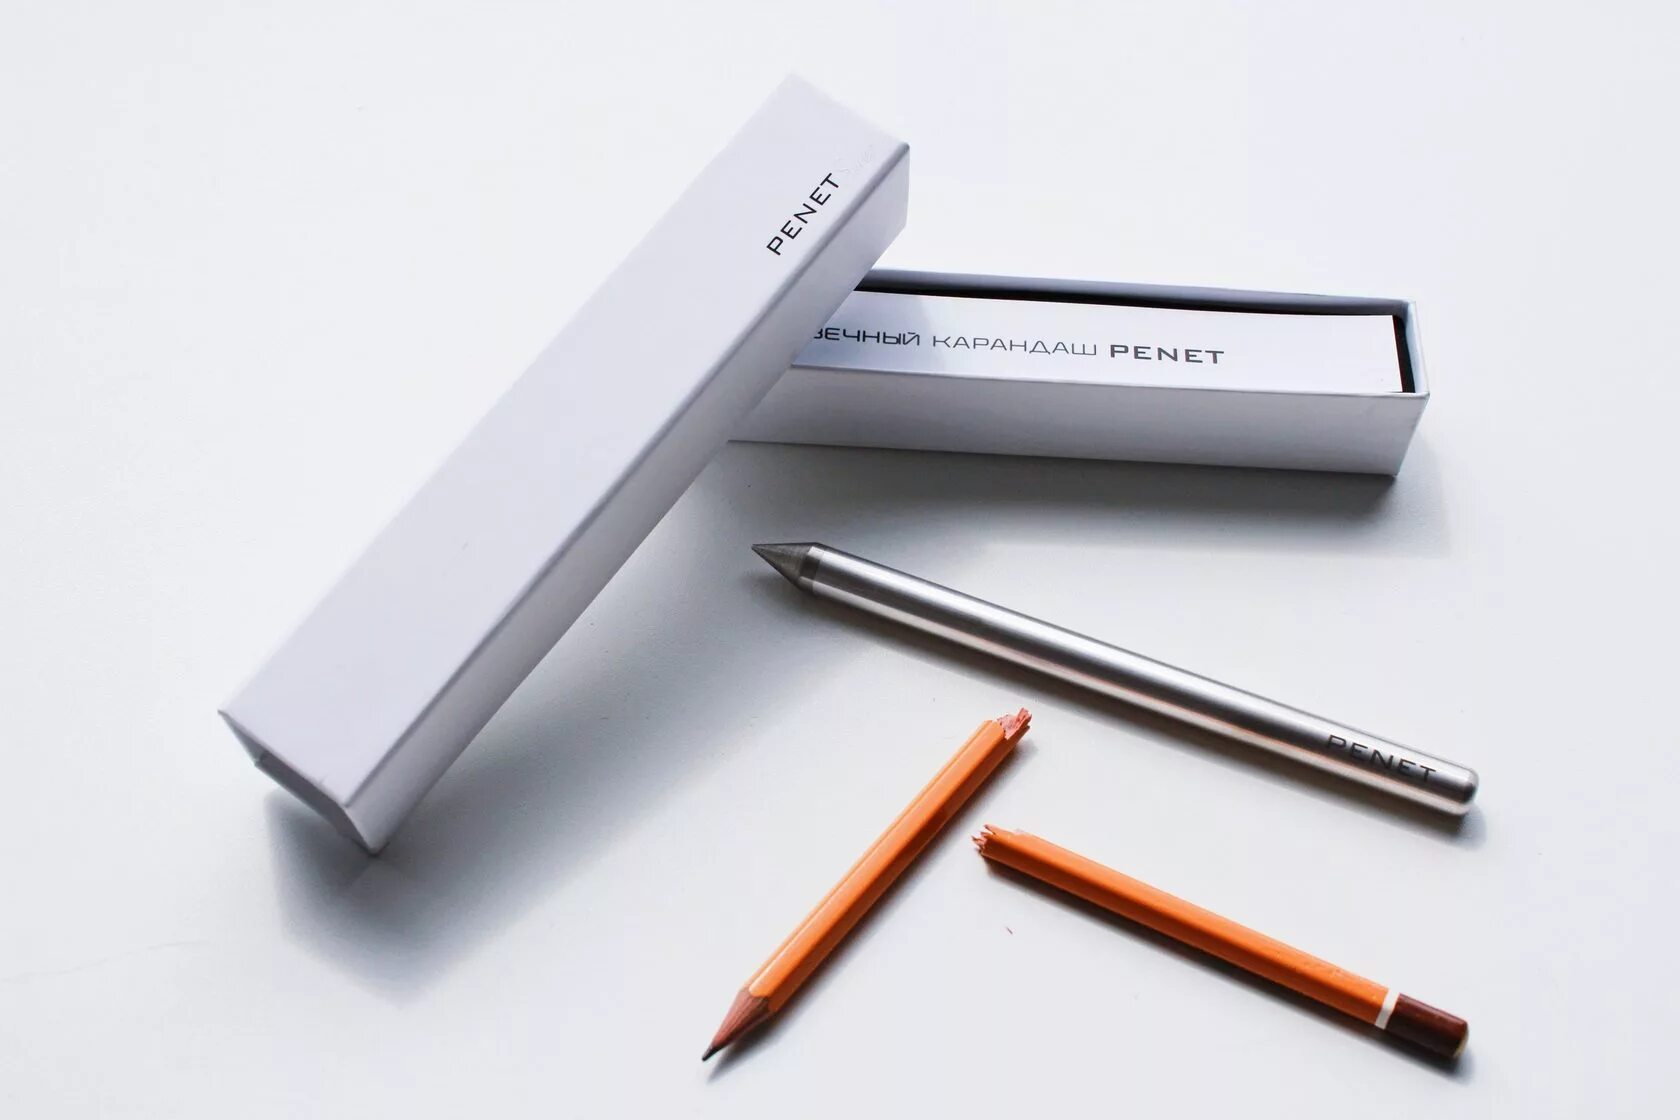 Вечный карандаш penet. Грифель для вечного карандаша. Металлический карандаш вечный. Бесконечный карандаш металлический. Купить карандаши металлические